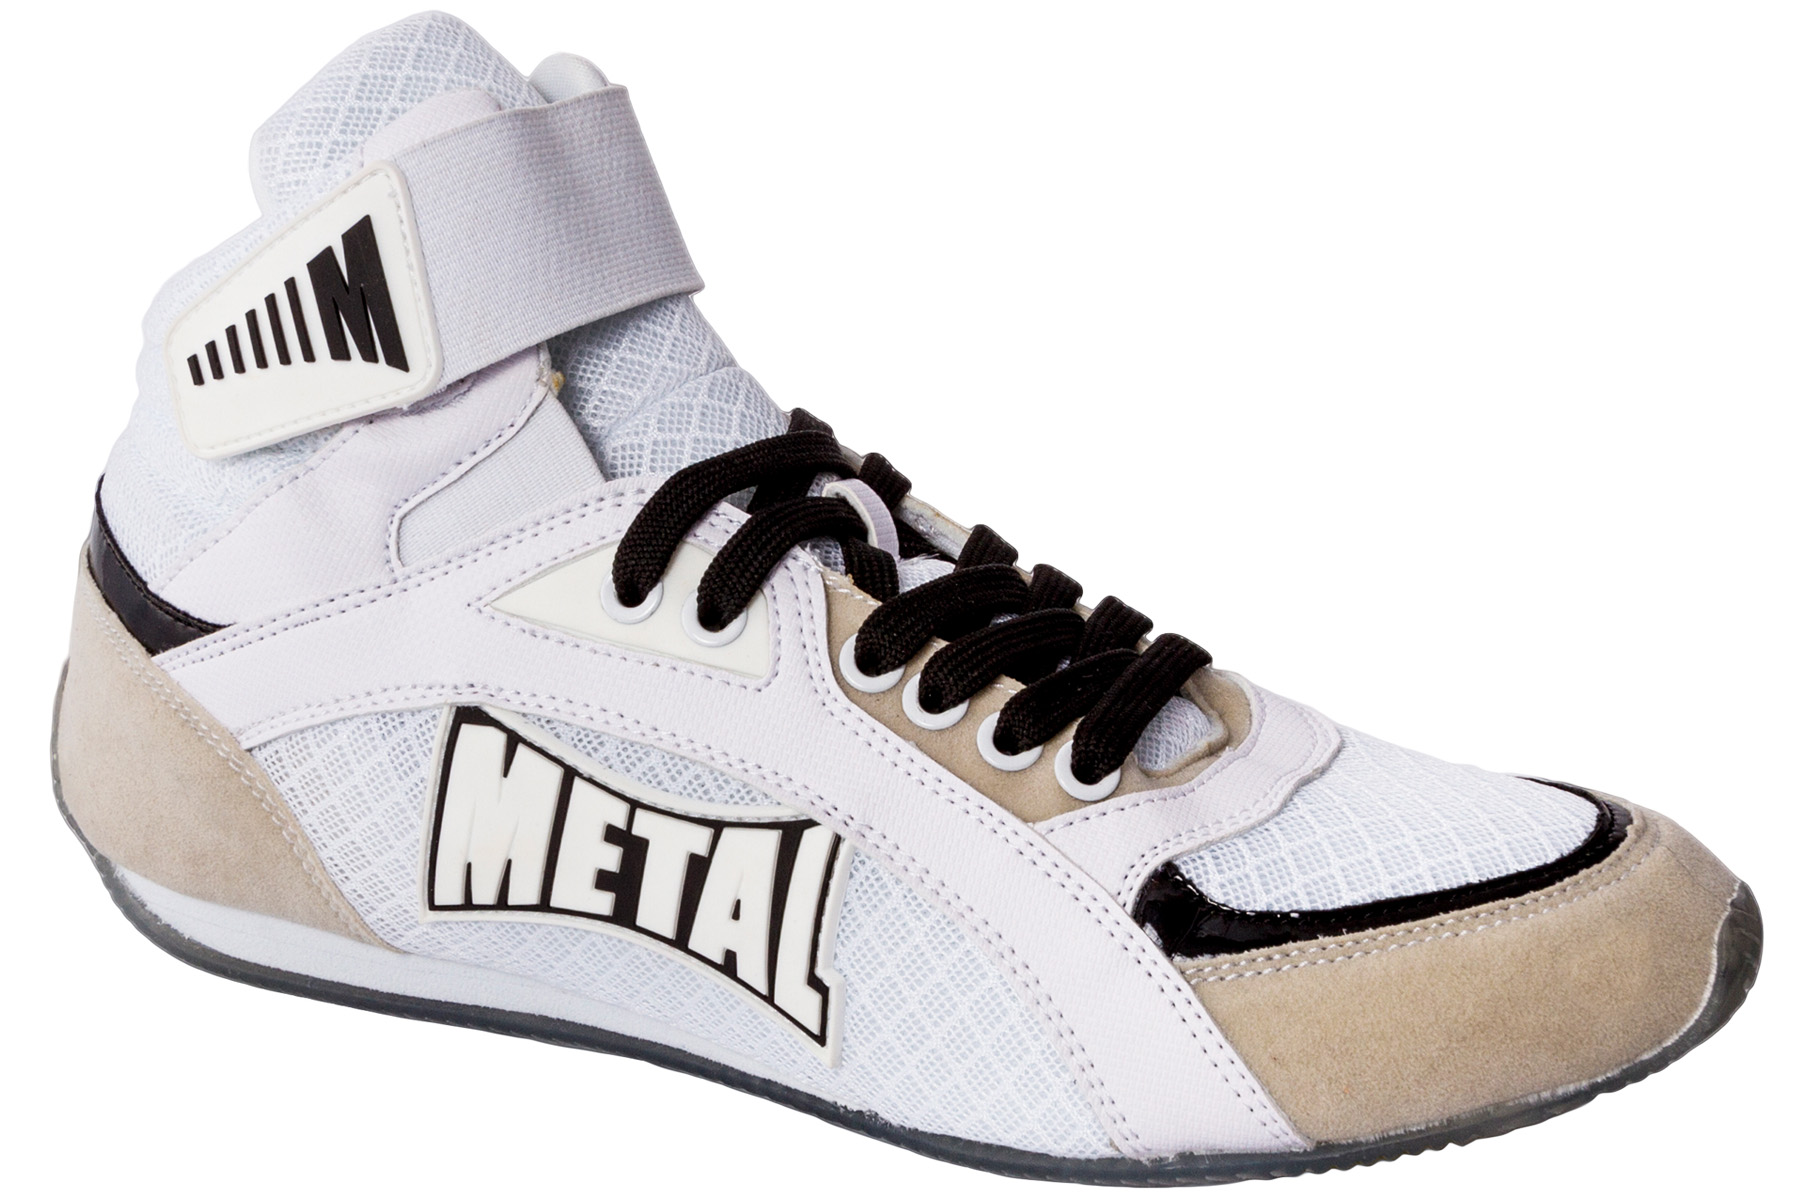 Chaussures de Boxe, Pointures 41 & 46 - CH100, Metal Boxe